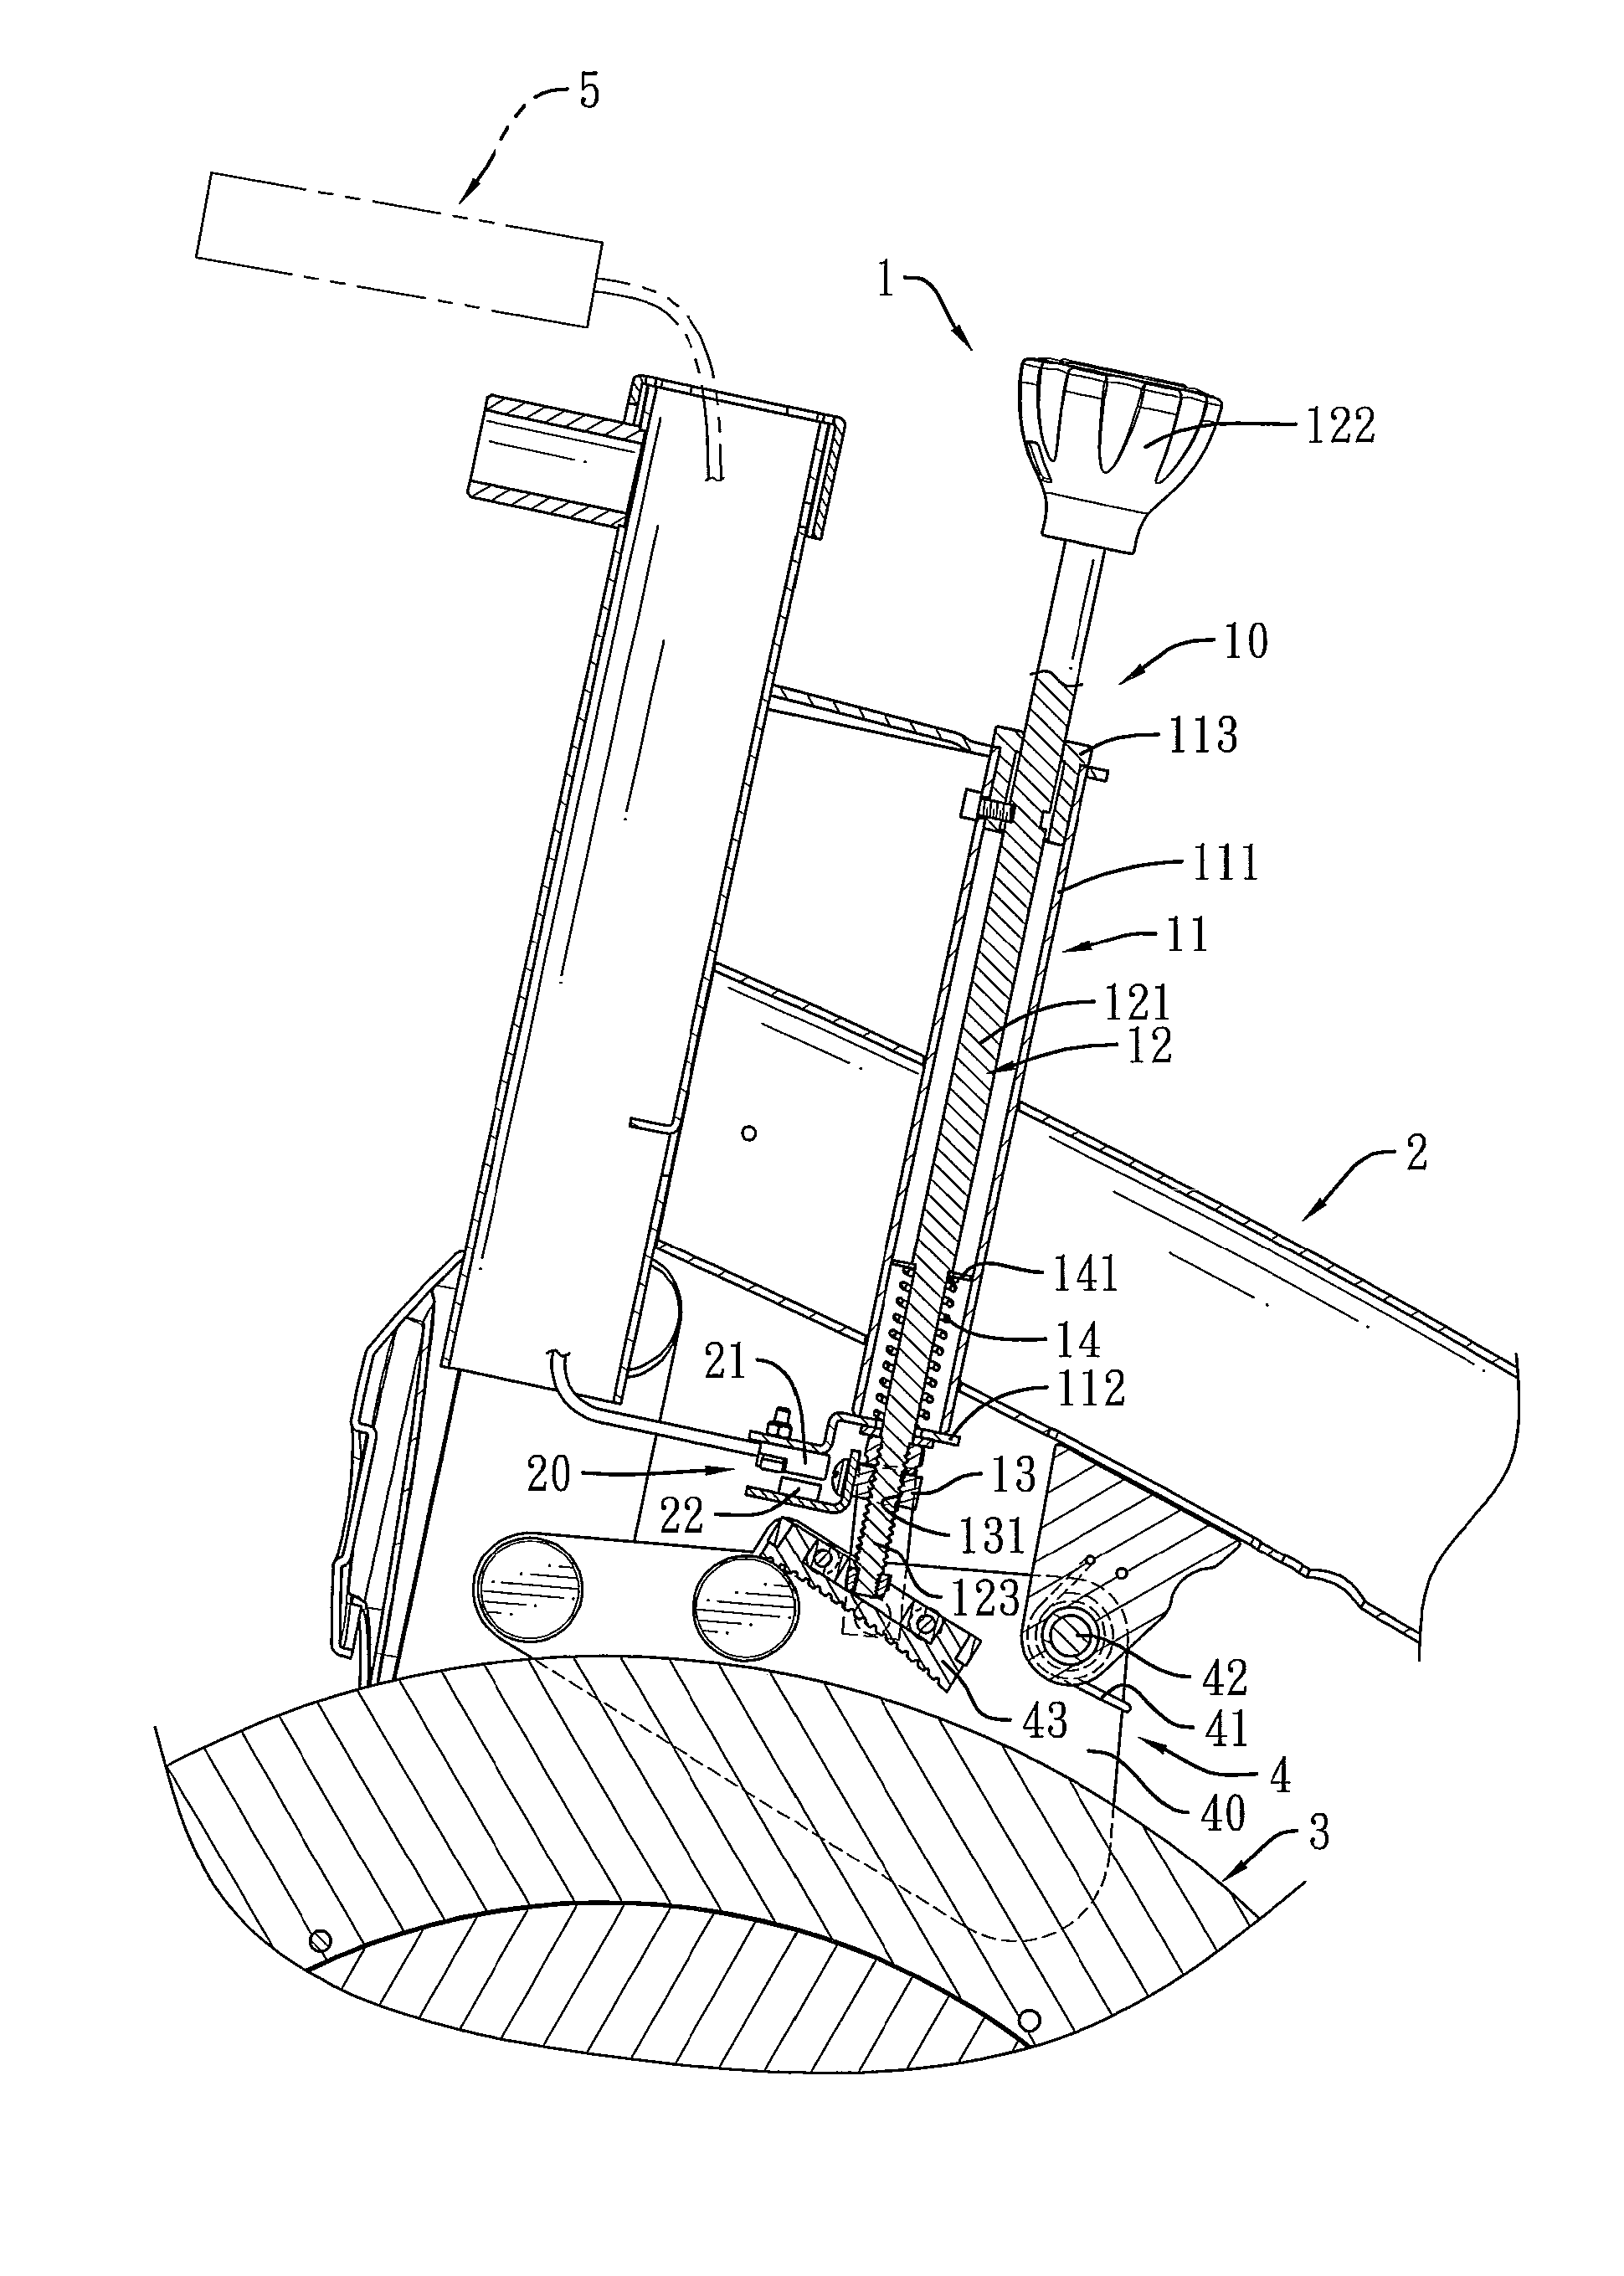 Torque sensing apparatus